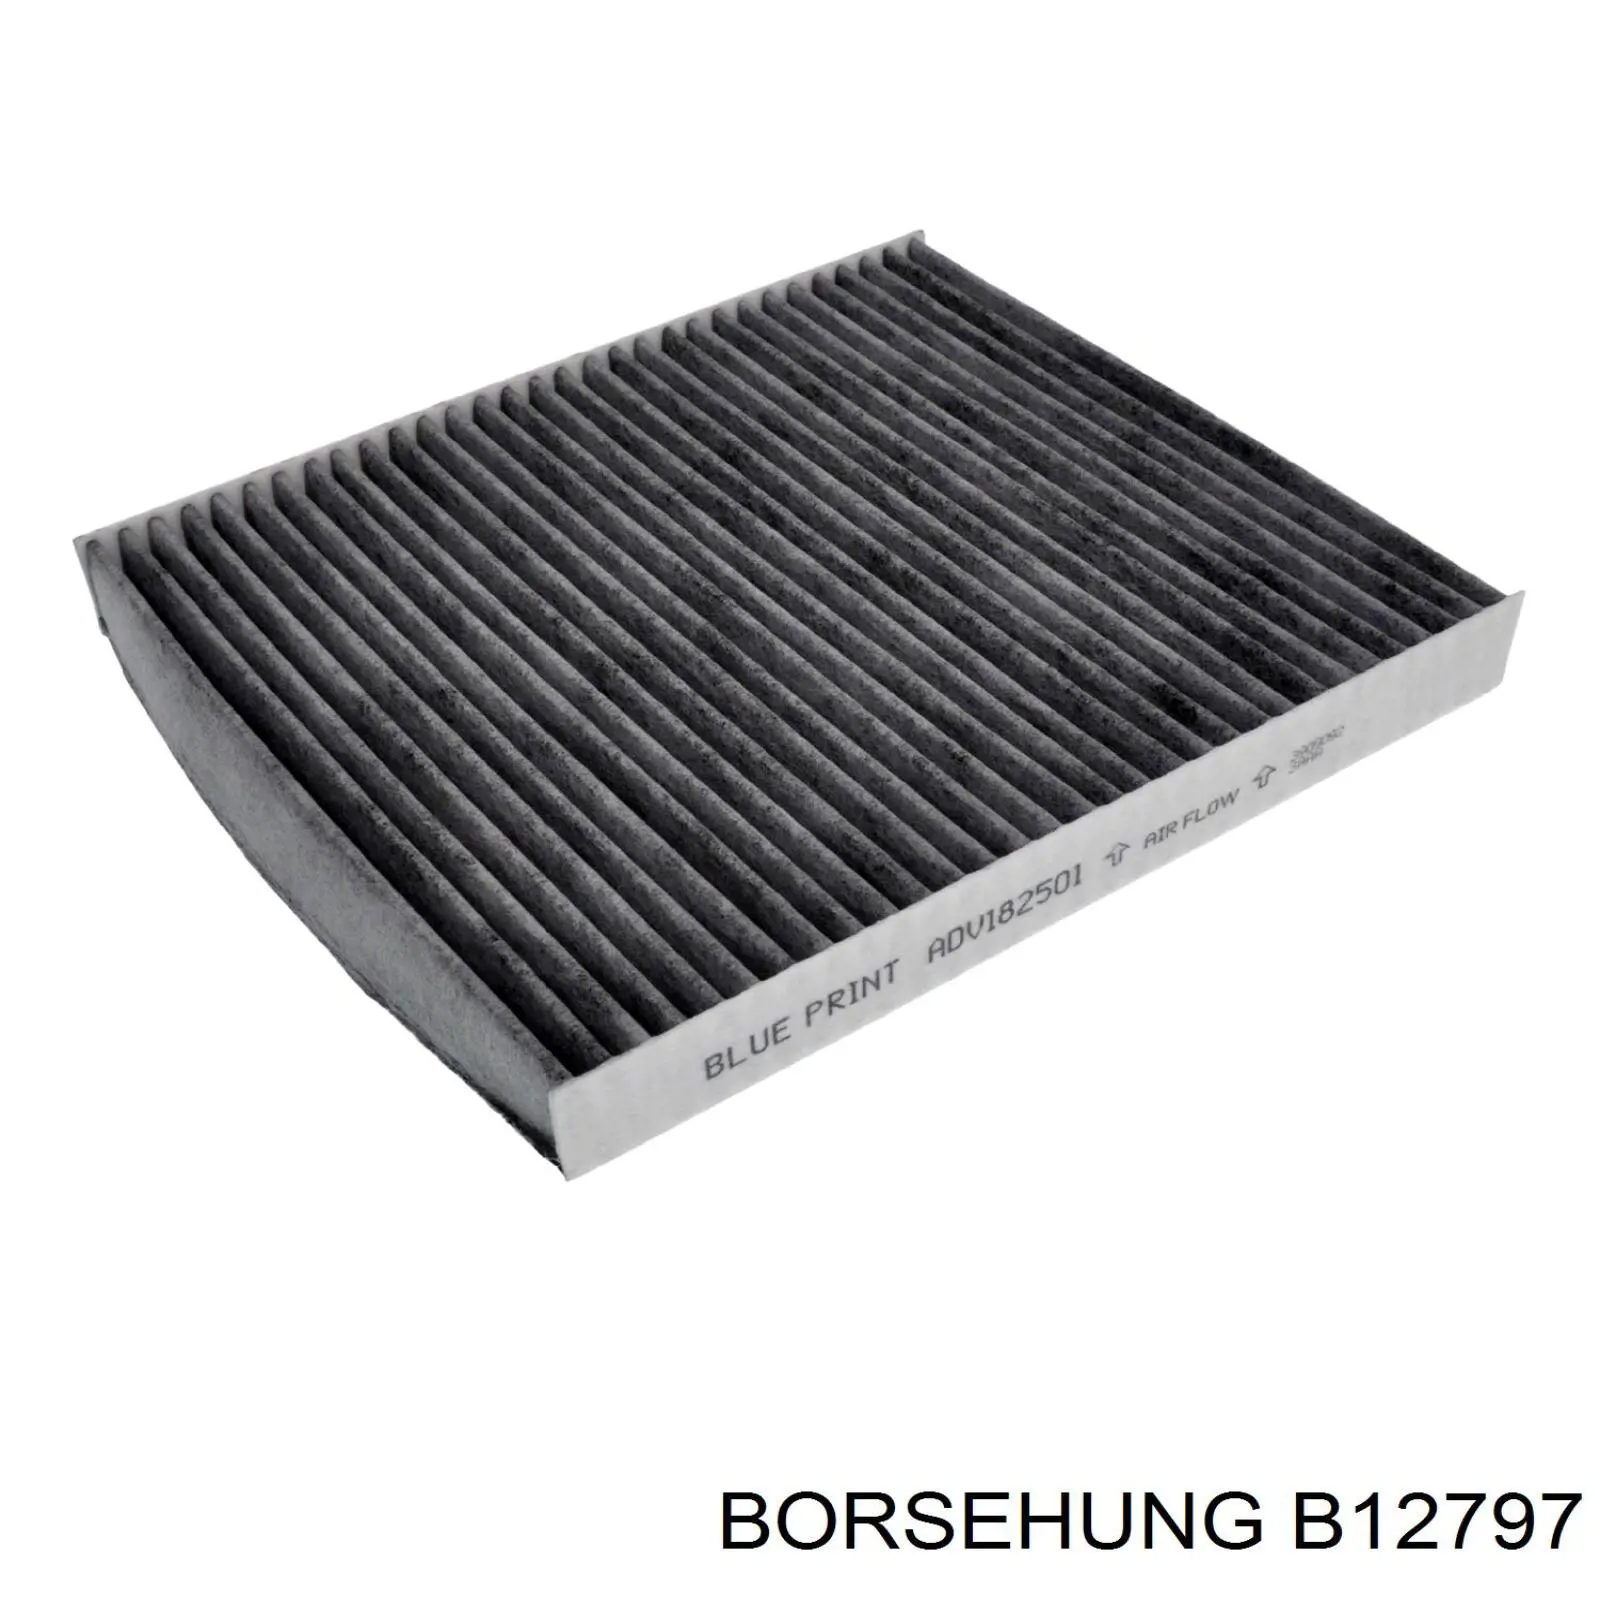 B12797 Borsehung filtro habitáculo